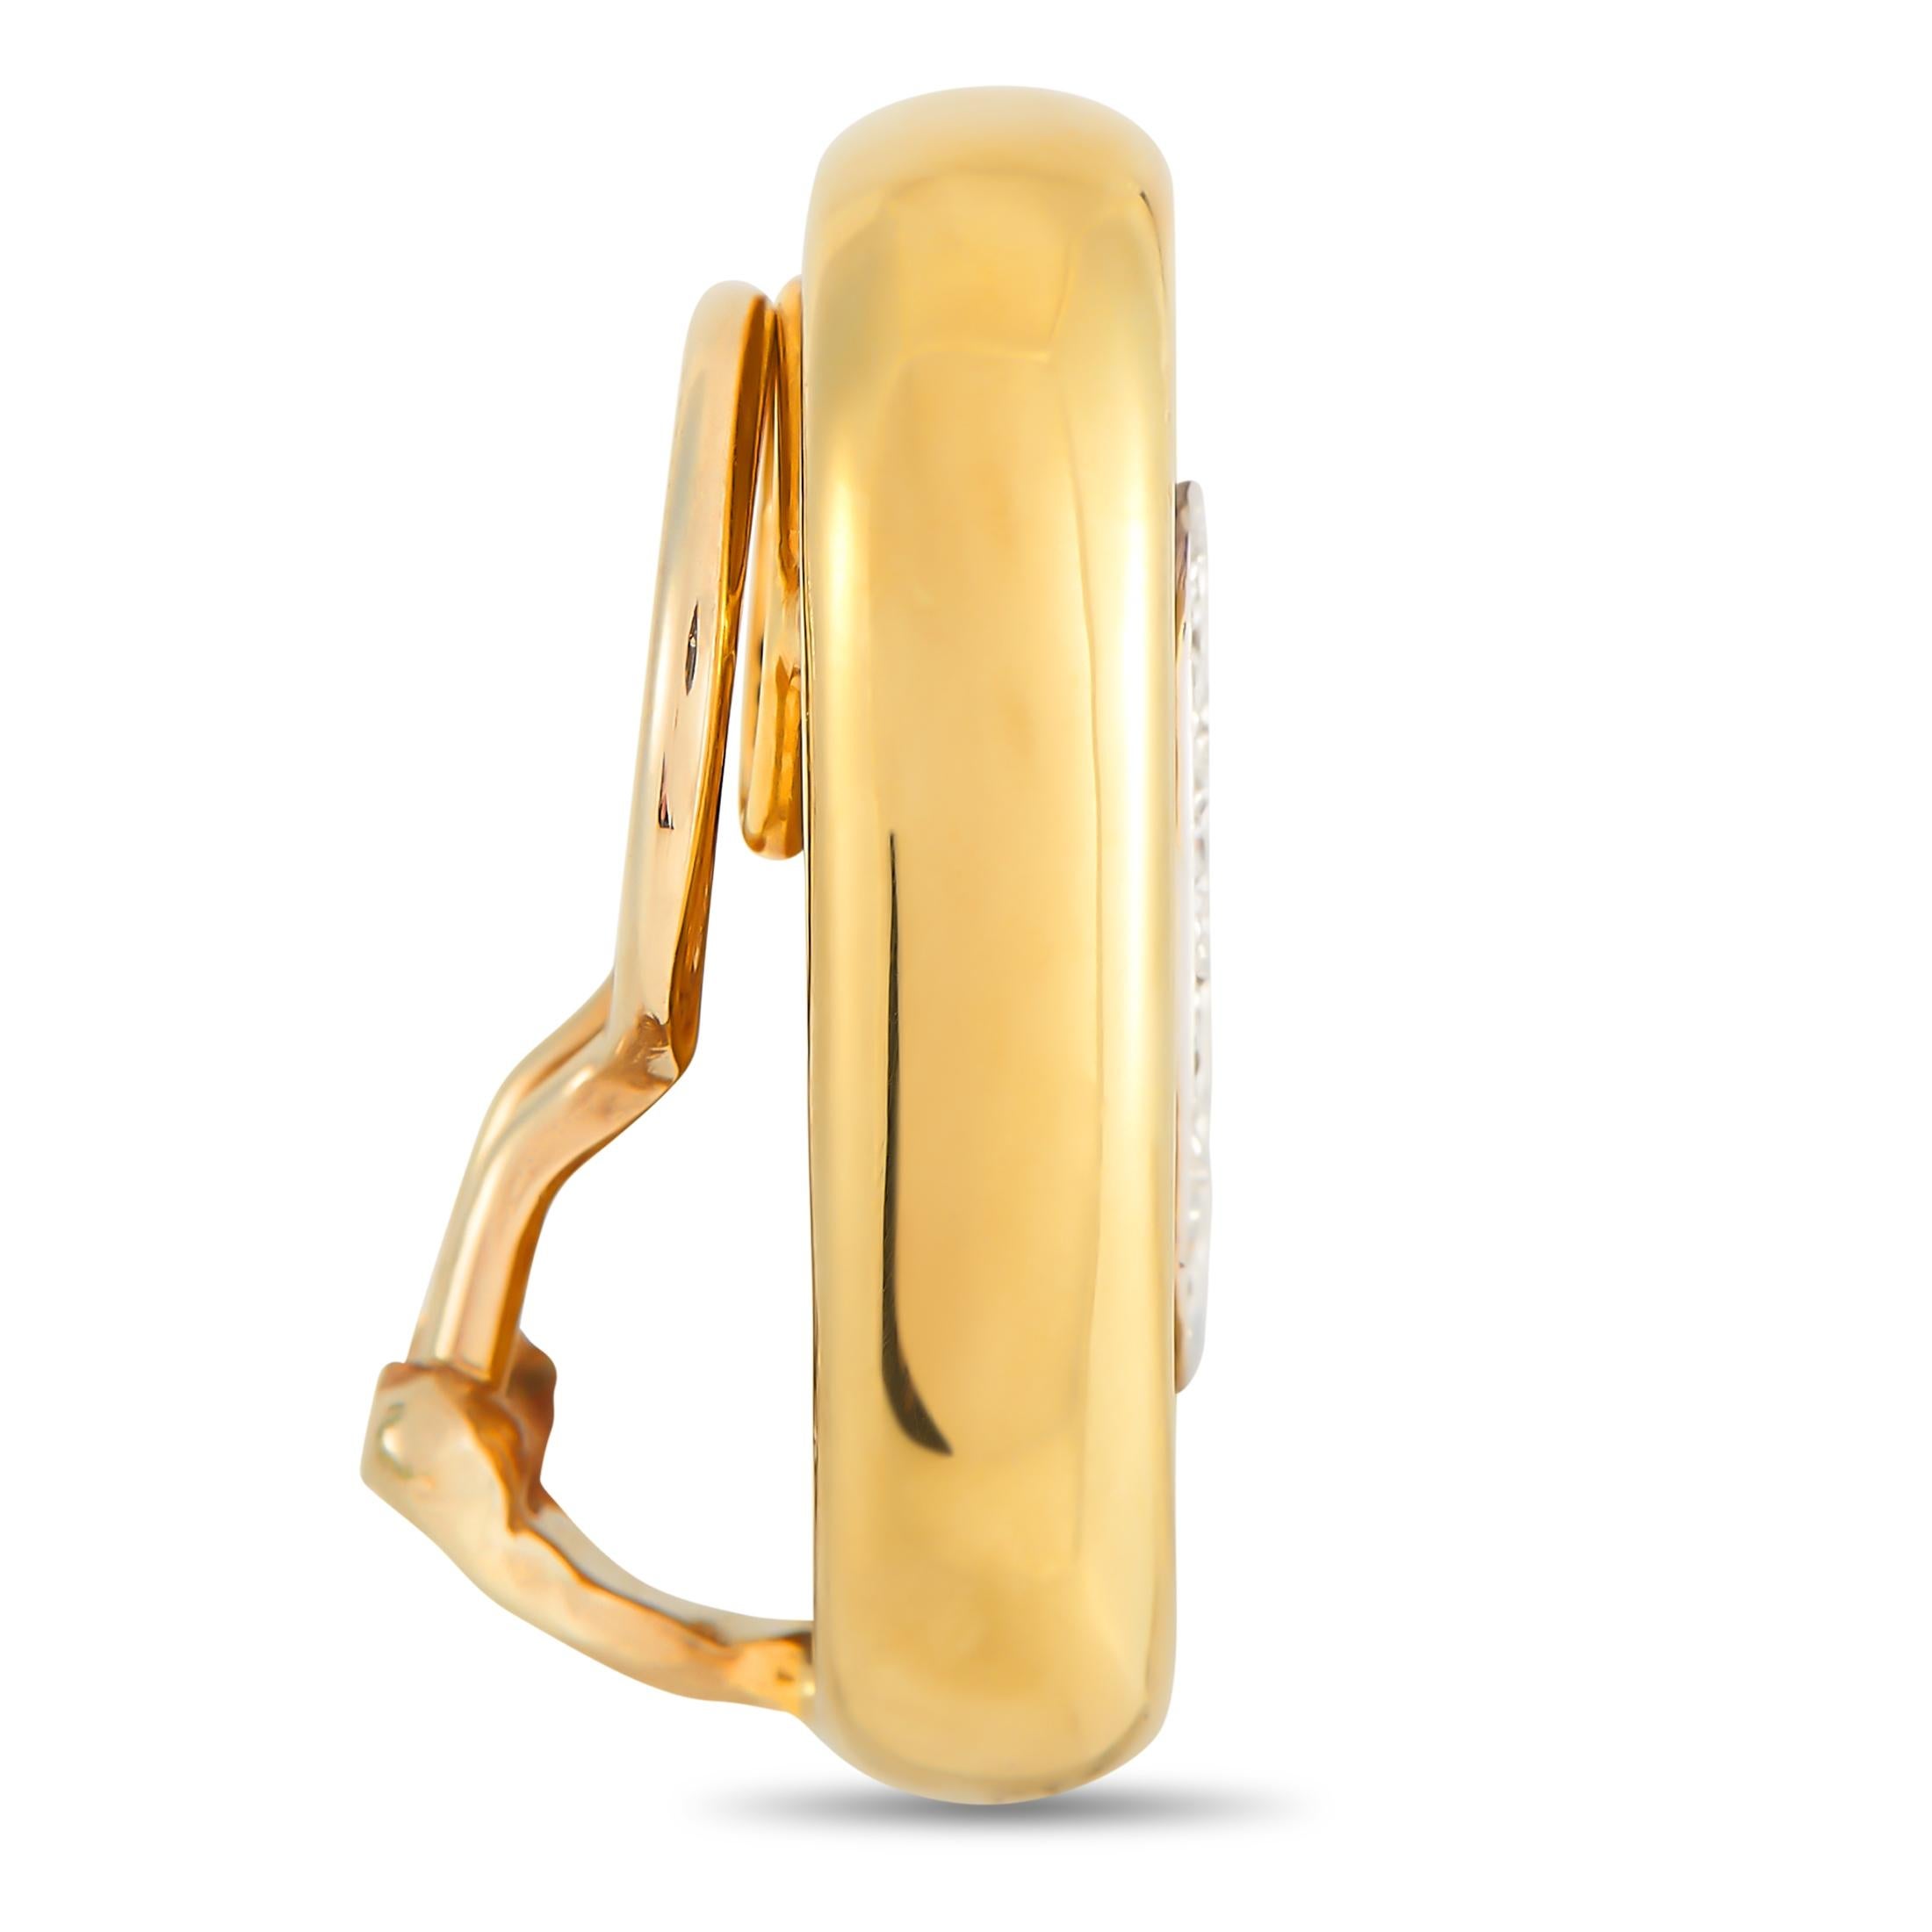 Une élégante monture de forme ovale en or jaune 18 carats, mesurant 0,94 cm de long et 0,57 cm de large, rend ces boucles d'oreilles élégantes incroyablement opulentes. Chacune d'entre elles est accentuée par un accent d'émail bleu profond au centre